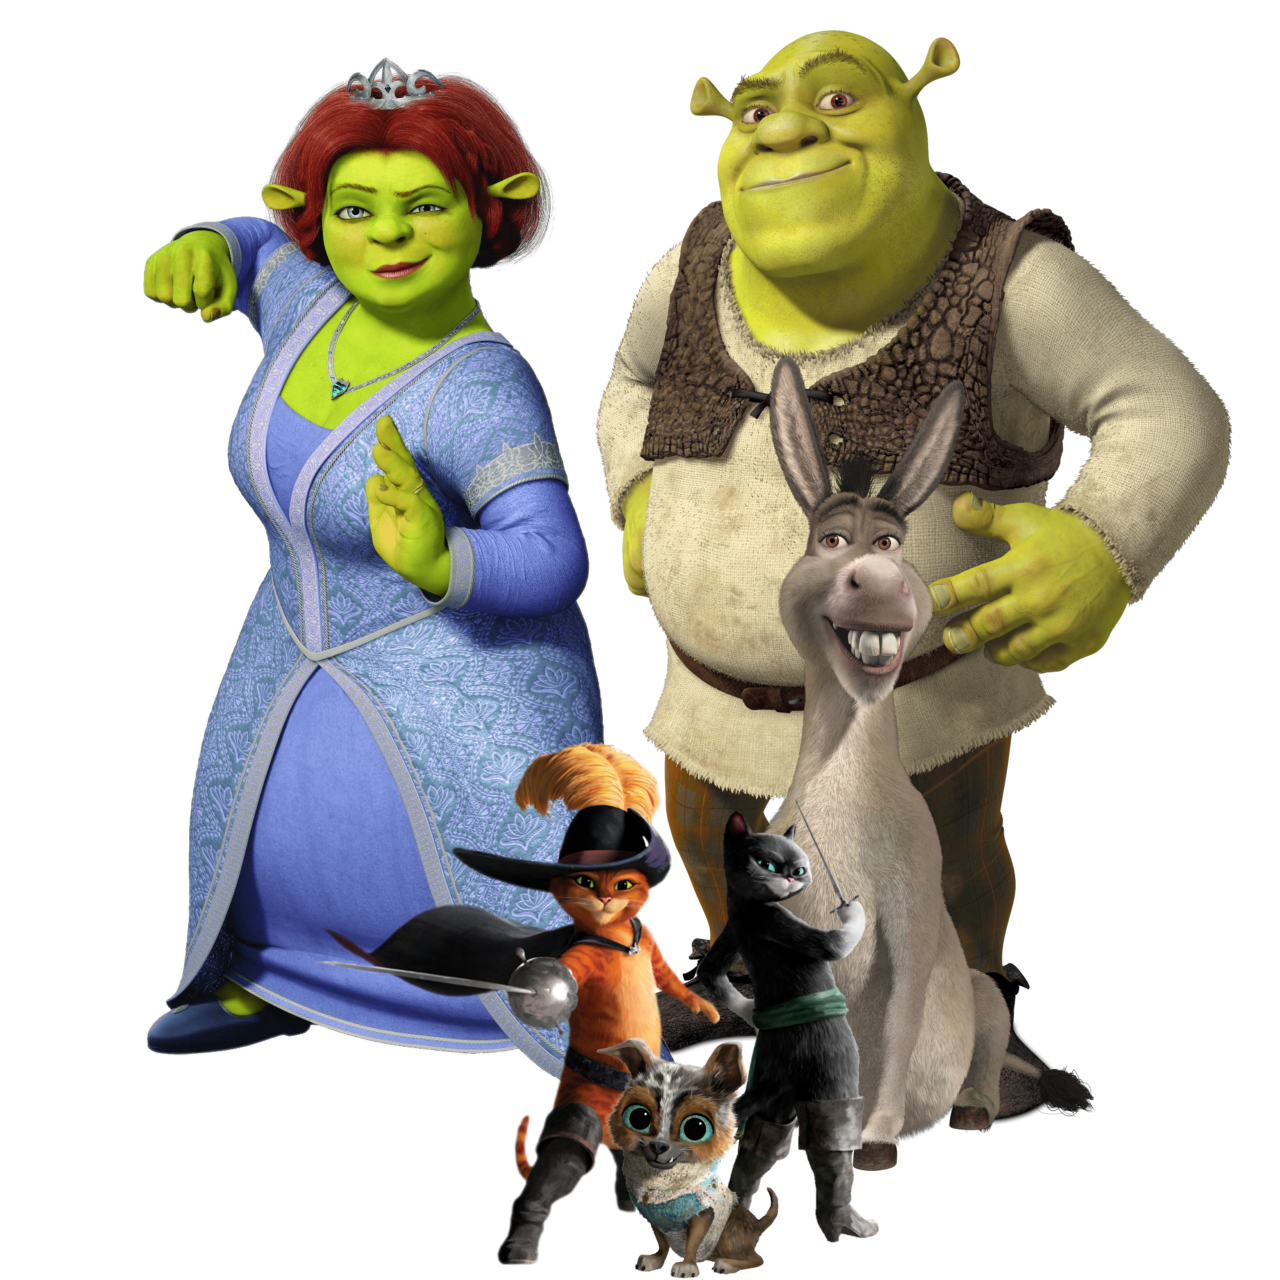 Shrek png images